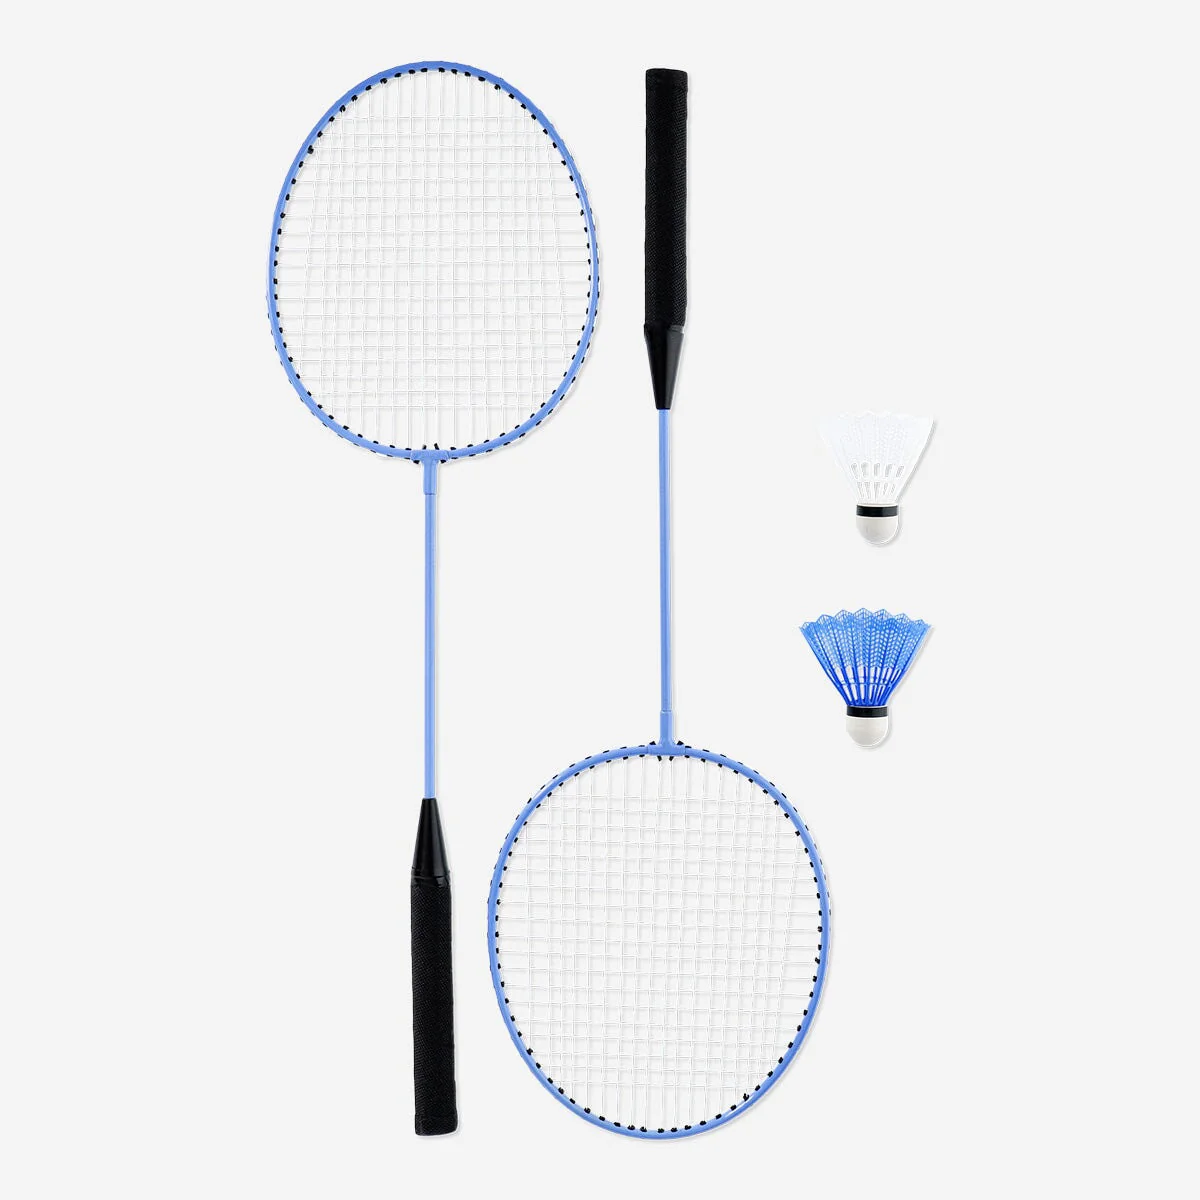 Blaue und weiße Badmintonschläger mit schwarzen Griffen, dargestellt mit zwei Arten von Federbällen auf weißem Hintergrund